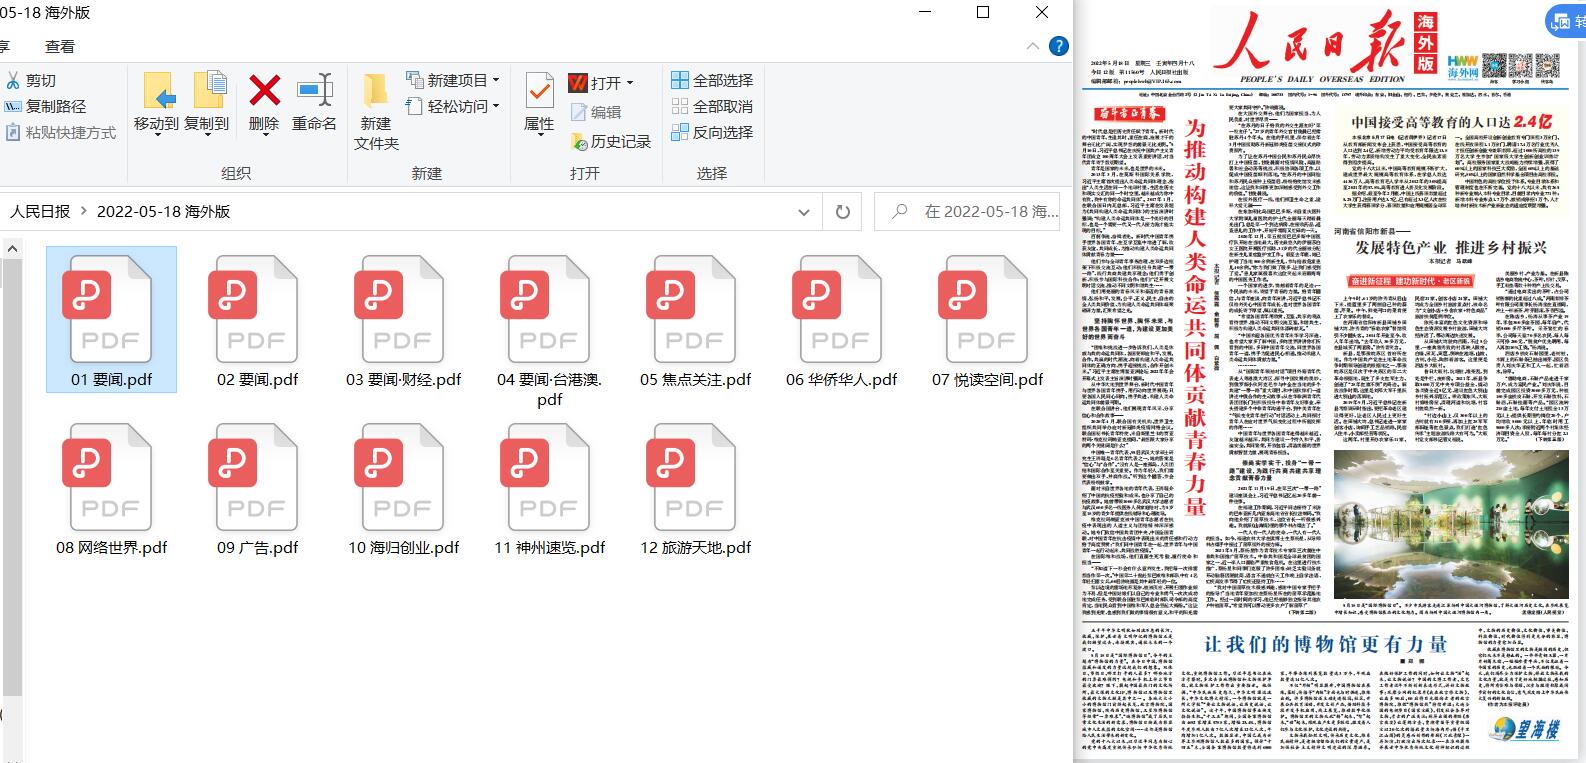 Windows 报刊下载 v0.3 海外便捷版